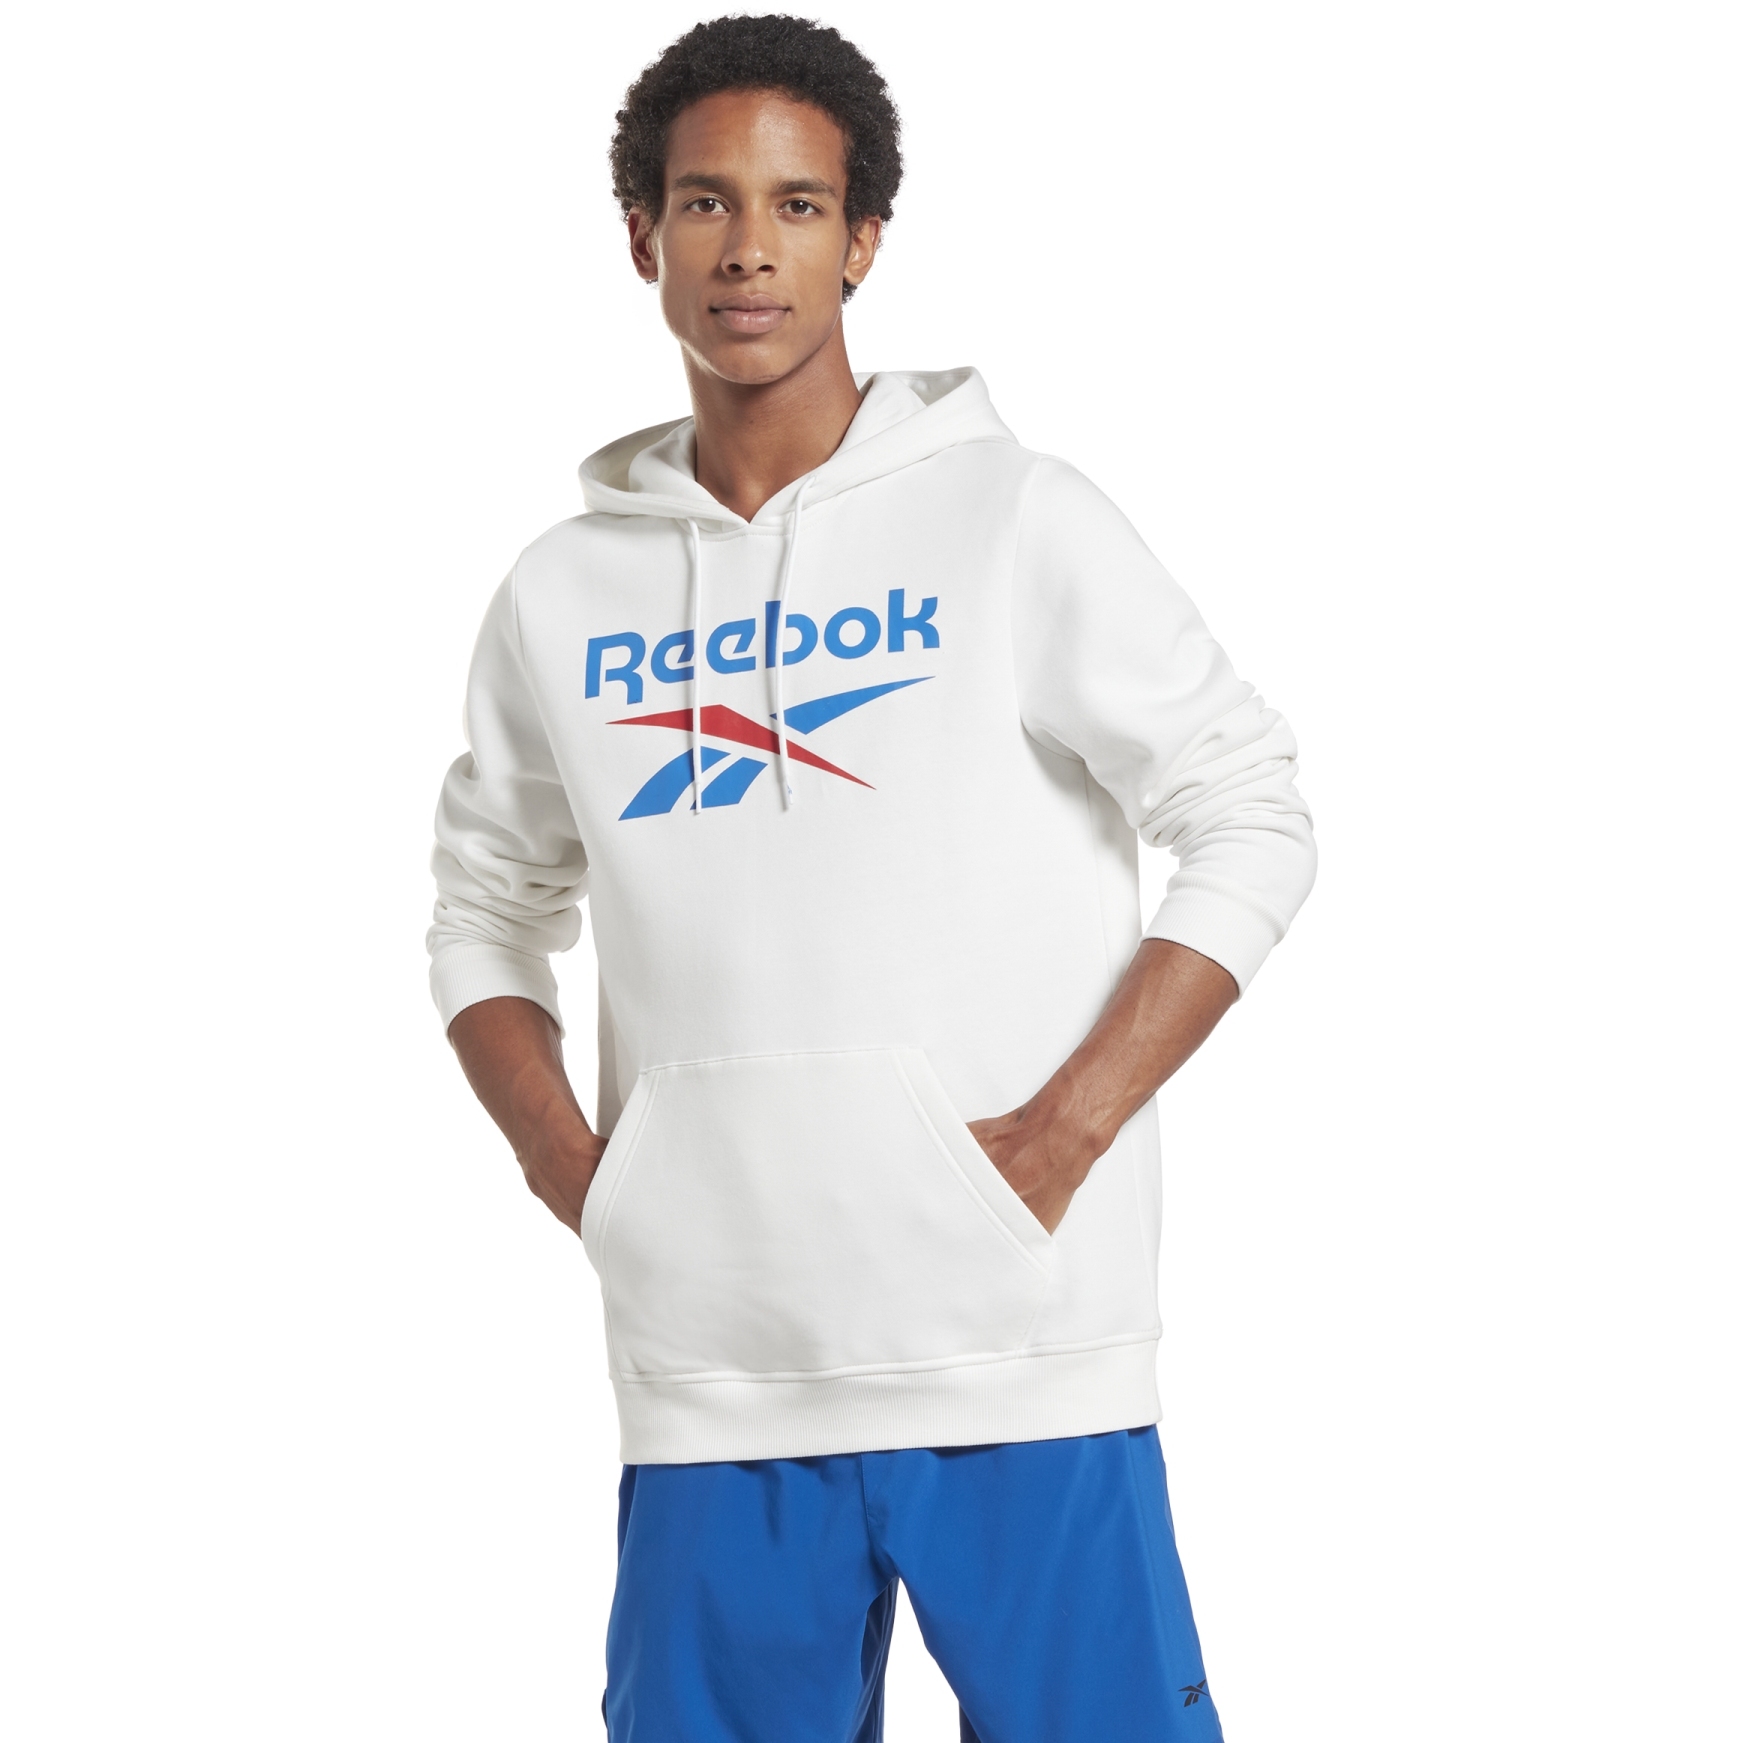 Produktbild von Reebok Identity Big Logo Fleece Hoodie Herren - weiß